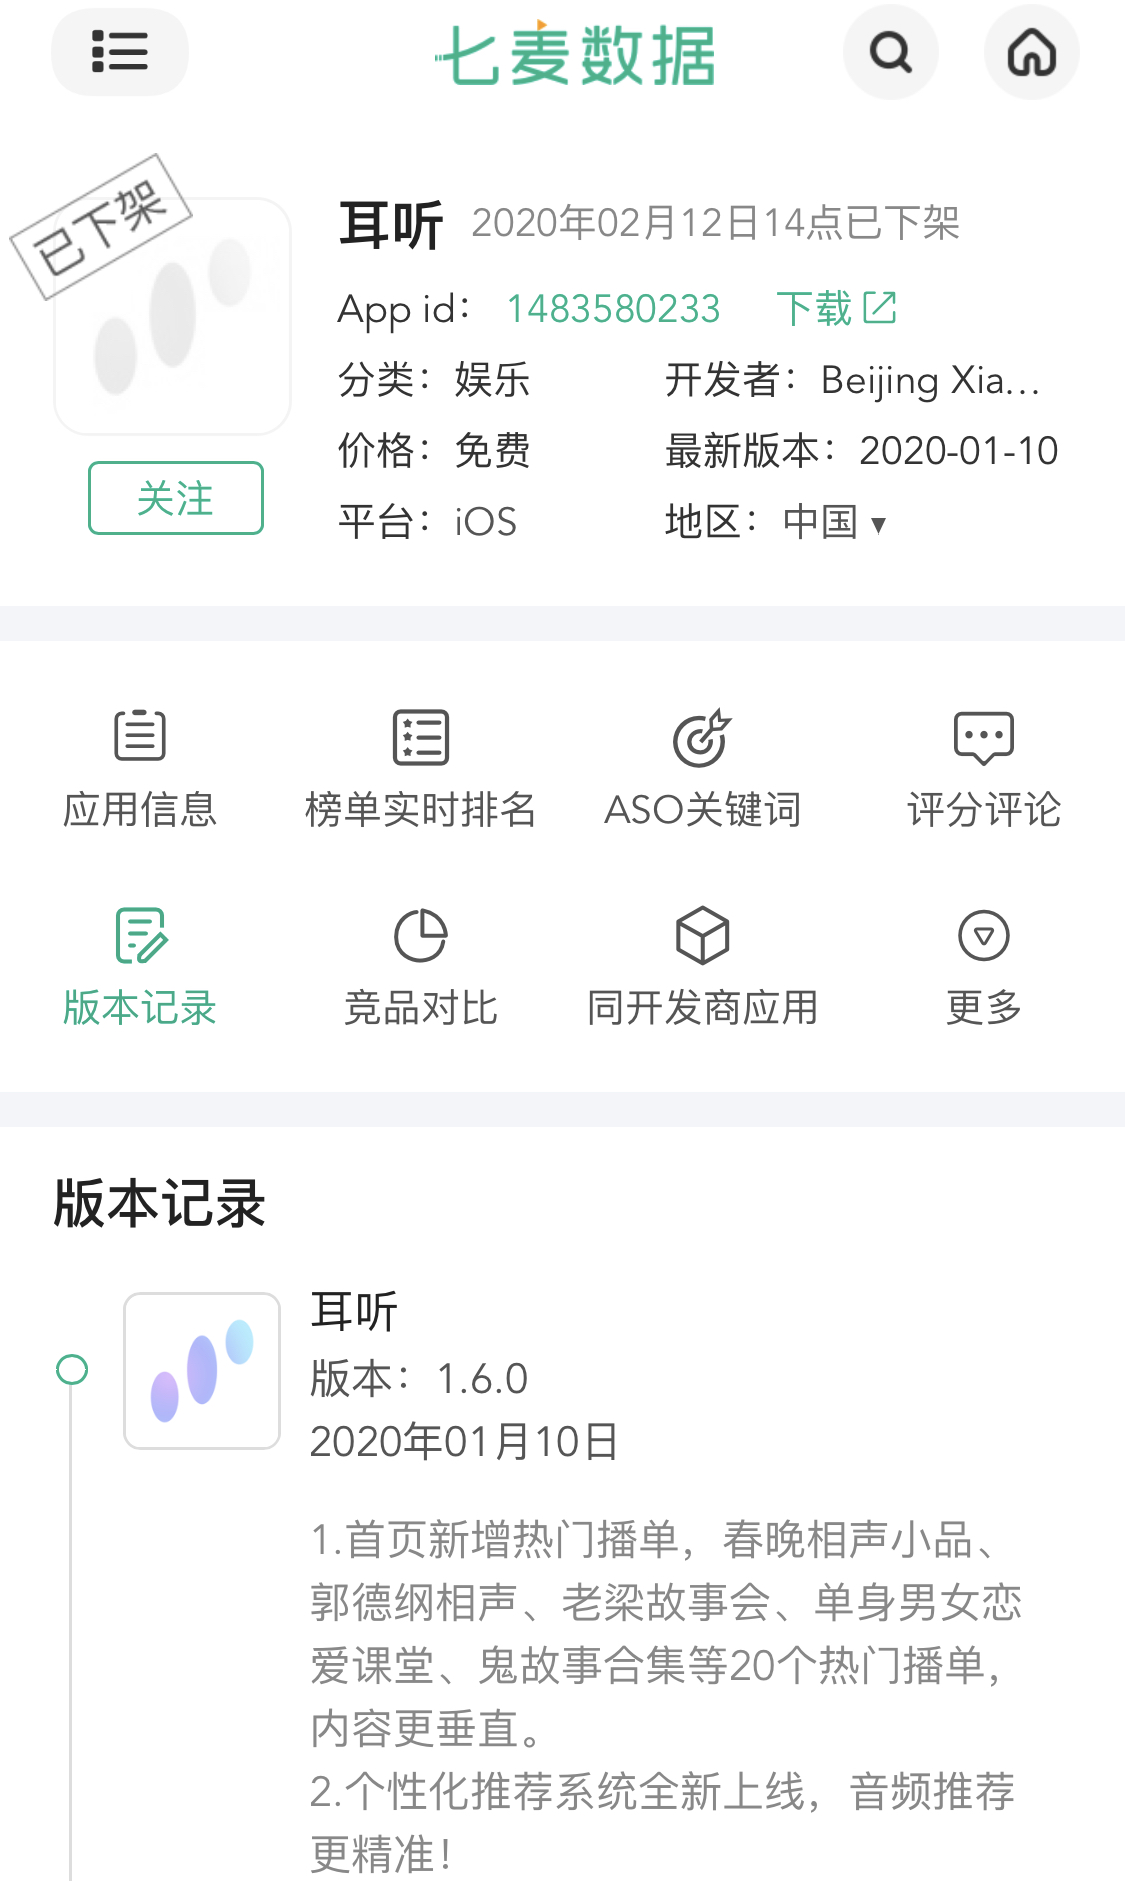 小米旗下声音娱乐App“耳听”下线，上线时间仅104天